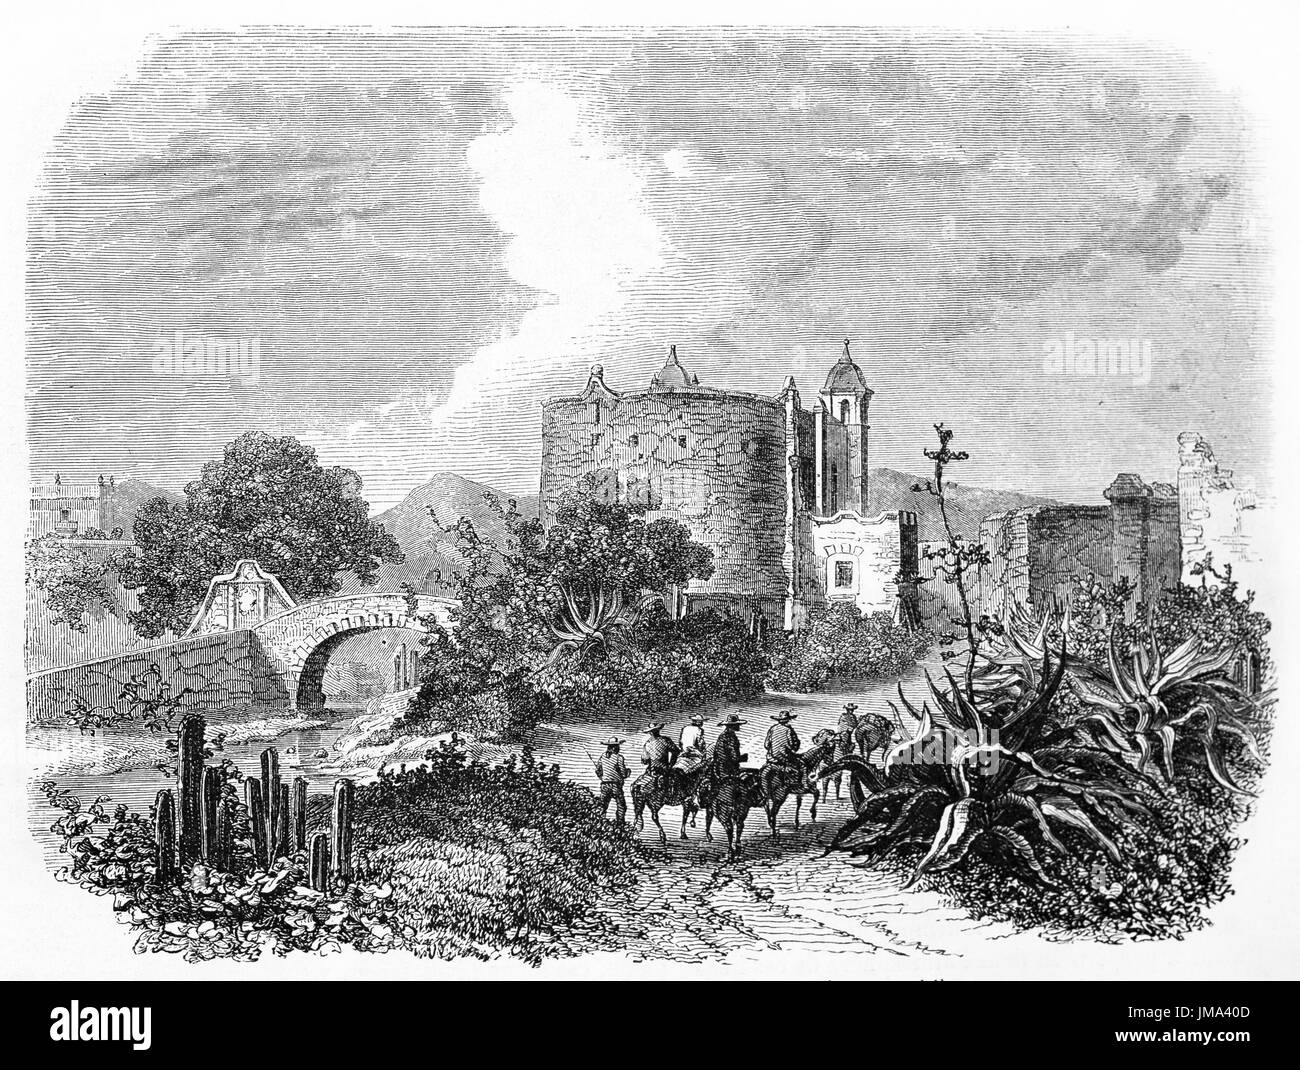 Porte de San Antonio, ville de Mexico, et des personnes à cheval marchant sur le chemin chaud vers la ville parmi la végétation mexicaine. Art de Sabatier, le Tour du monde, 1861 Banque D'Images